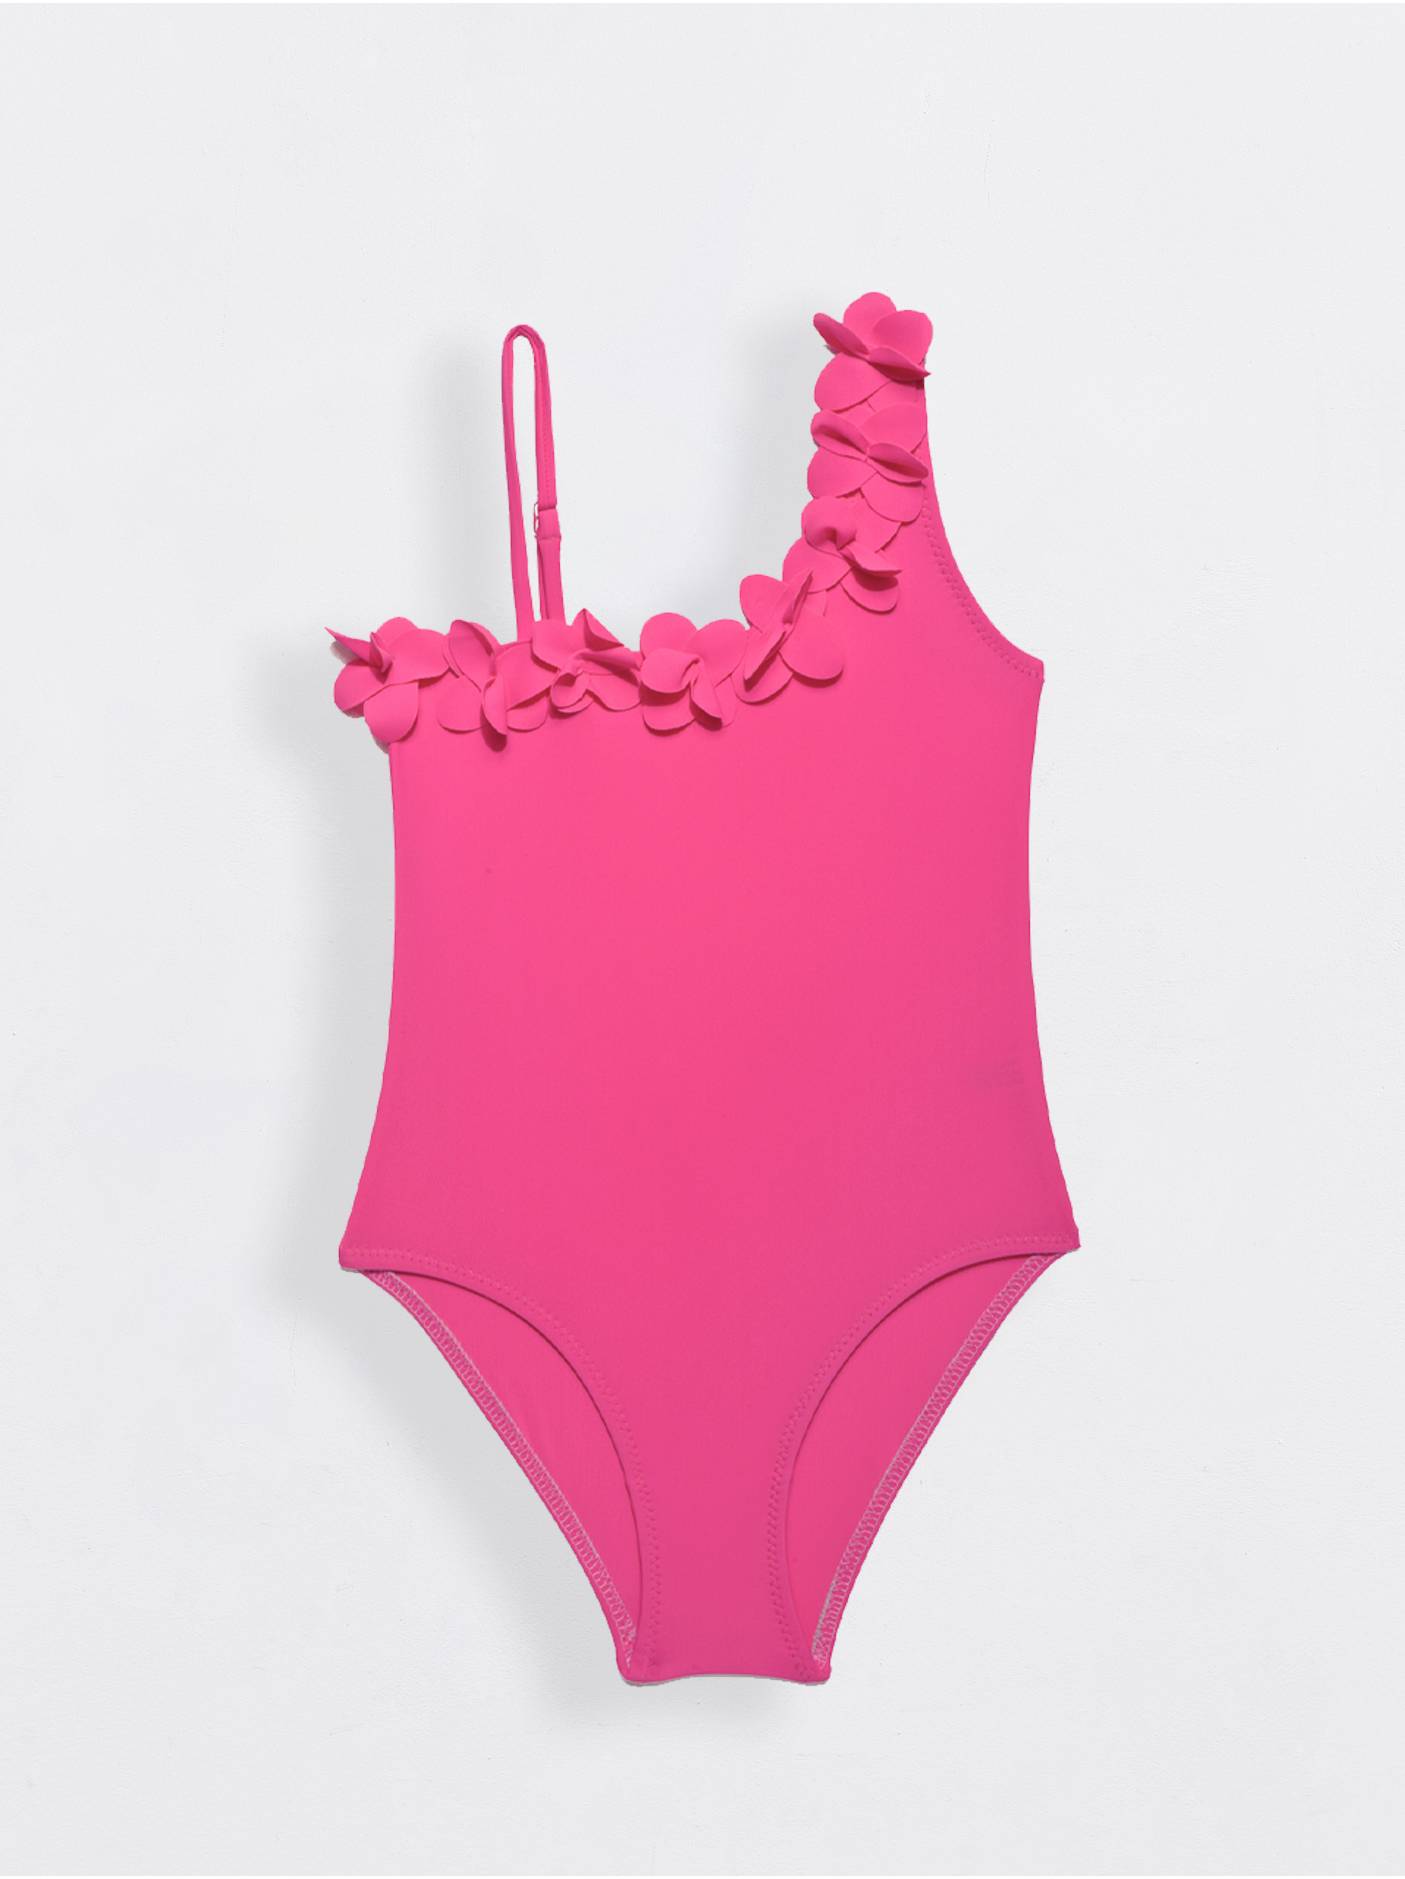 Слитный купальник на одно плечо ALANYA Conte ⭐️, цвет neon pink, размер 110 - фото 1